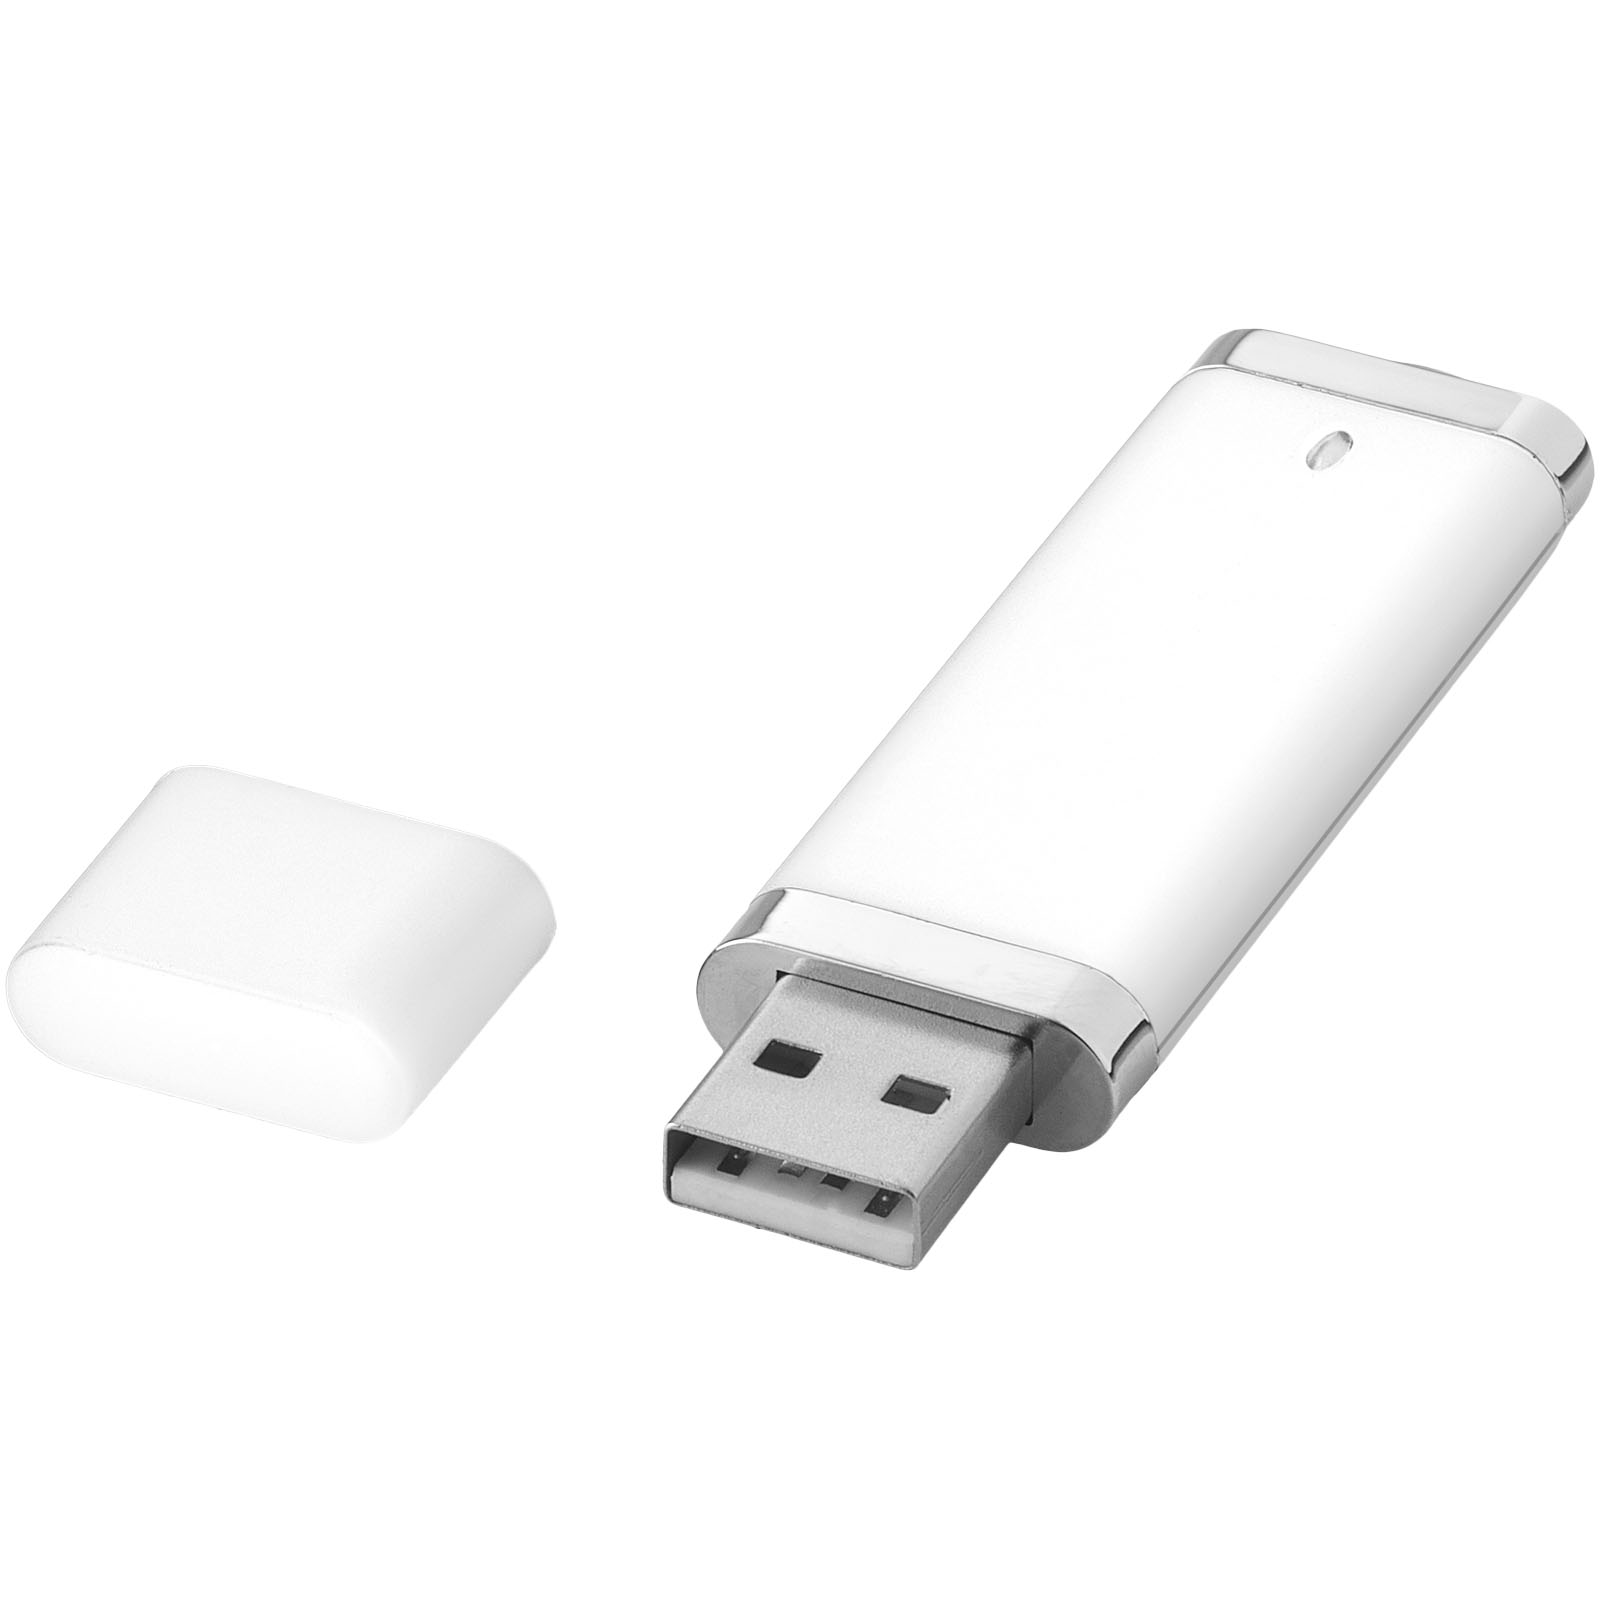 USB Flash Drives - Flat 4GB USB flash drive